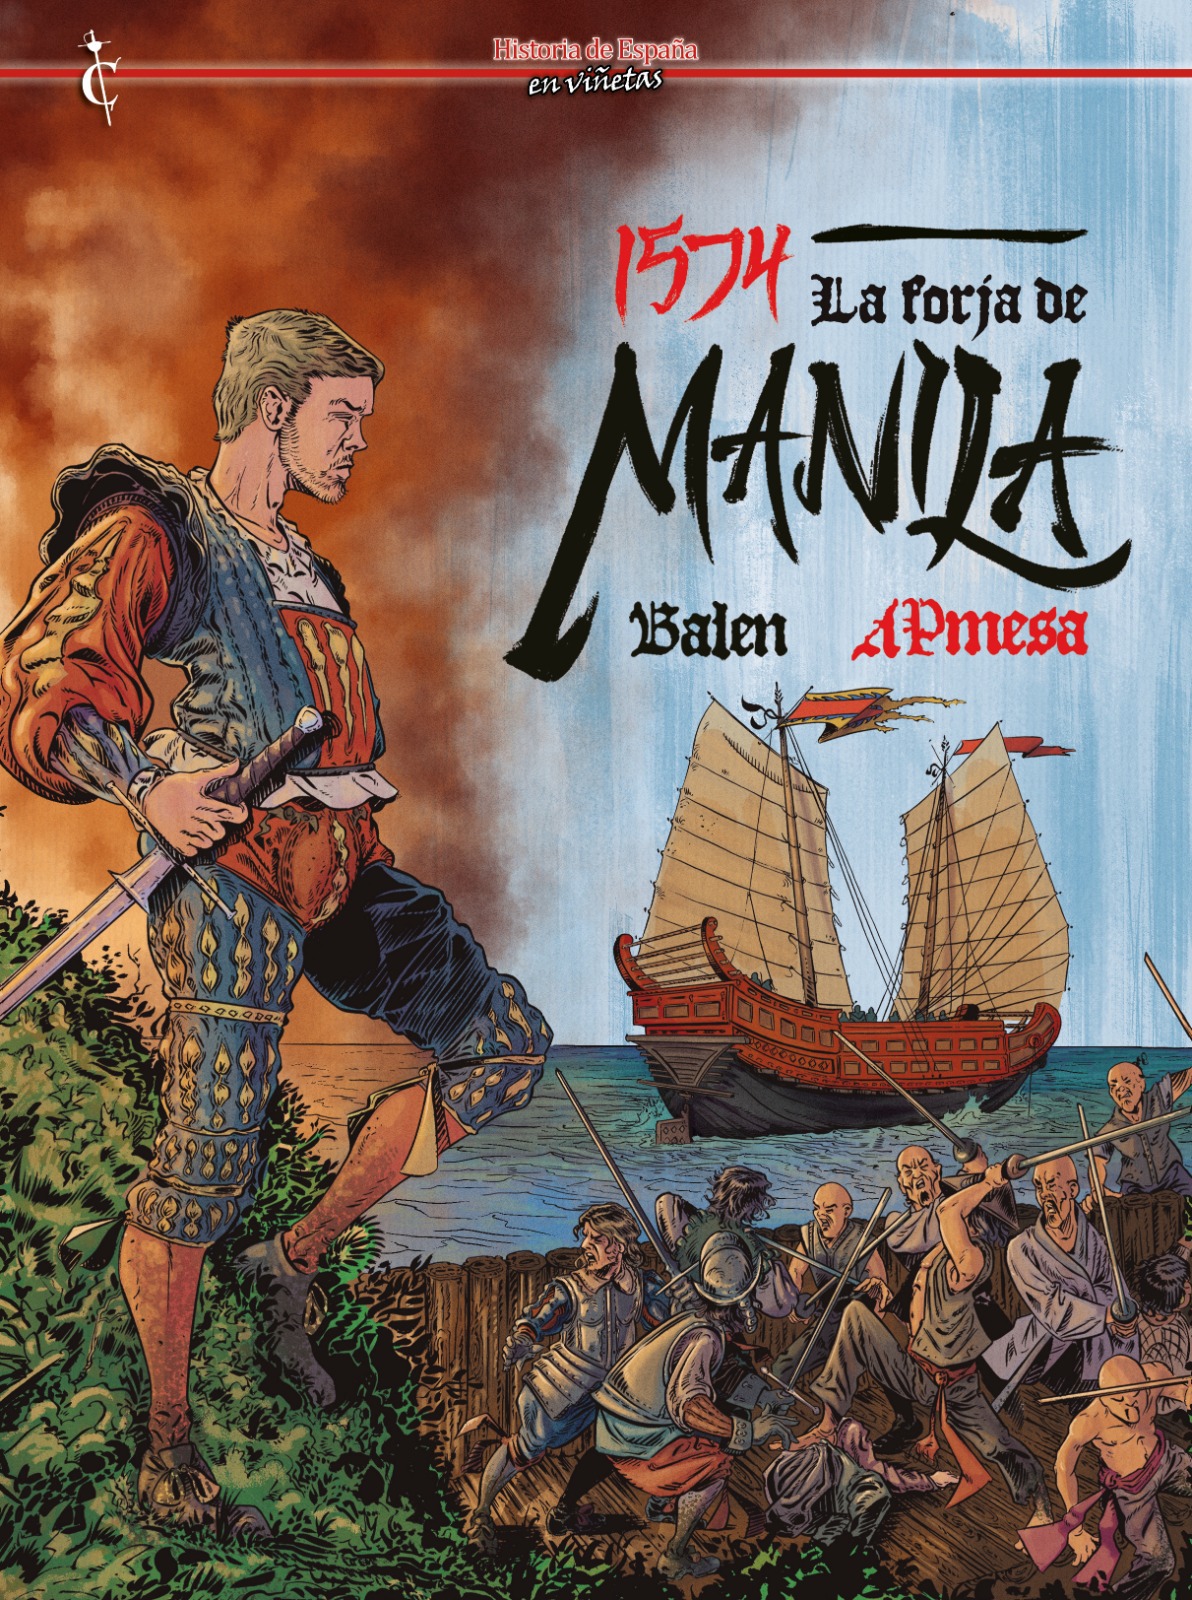 El pirata Limahon, Juan Salcedo y de cómo se forjó Manila